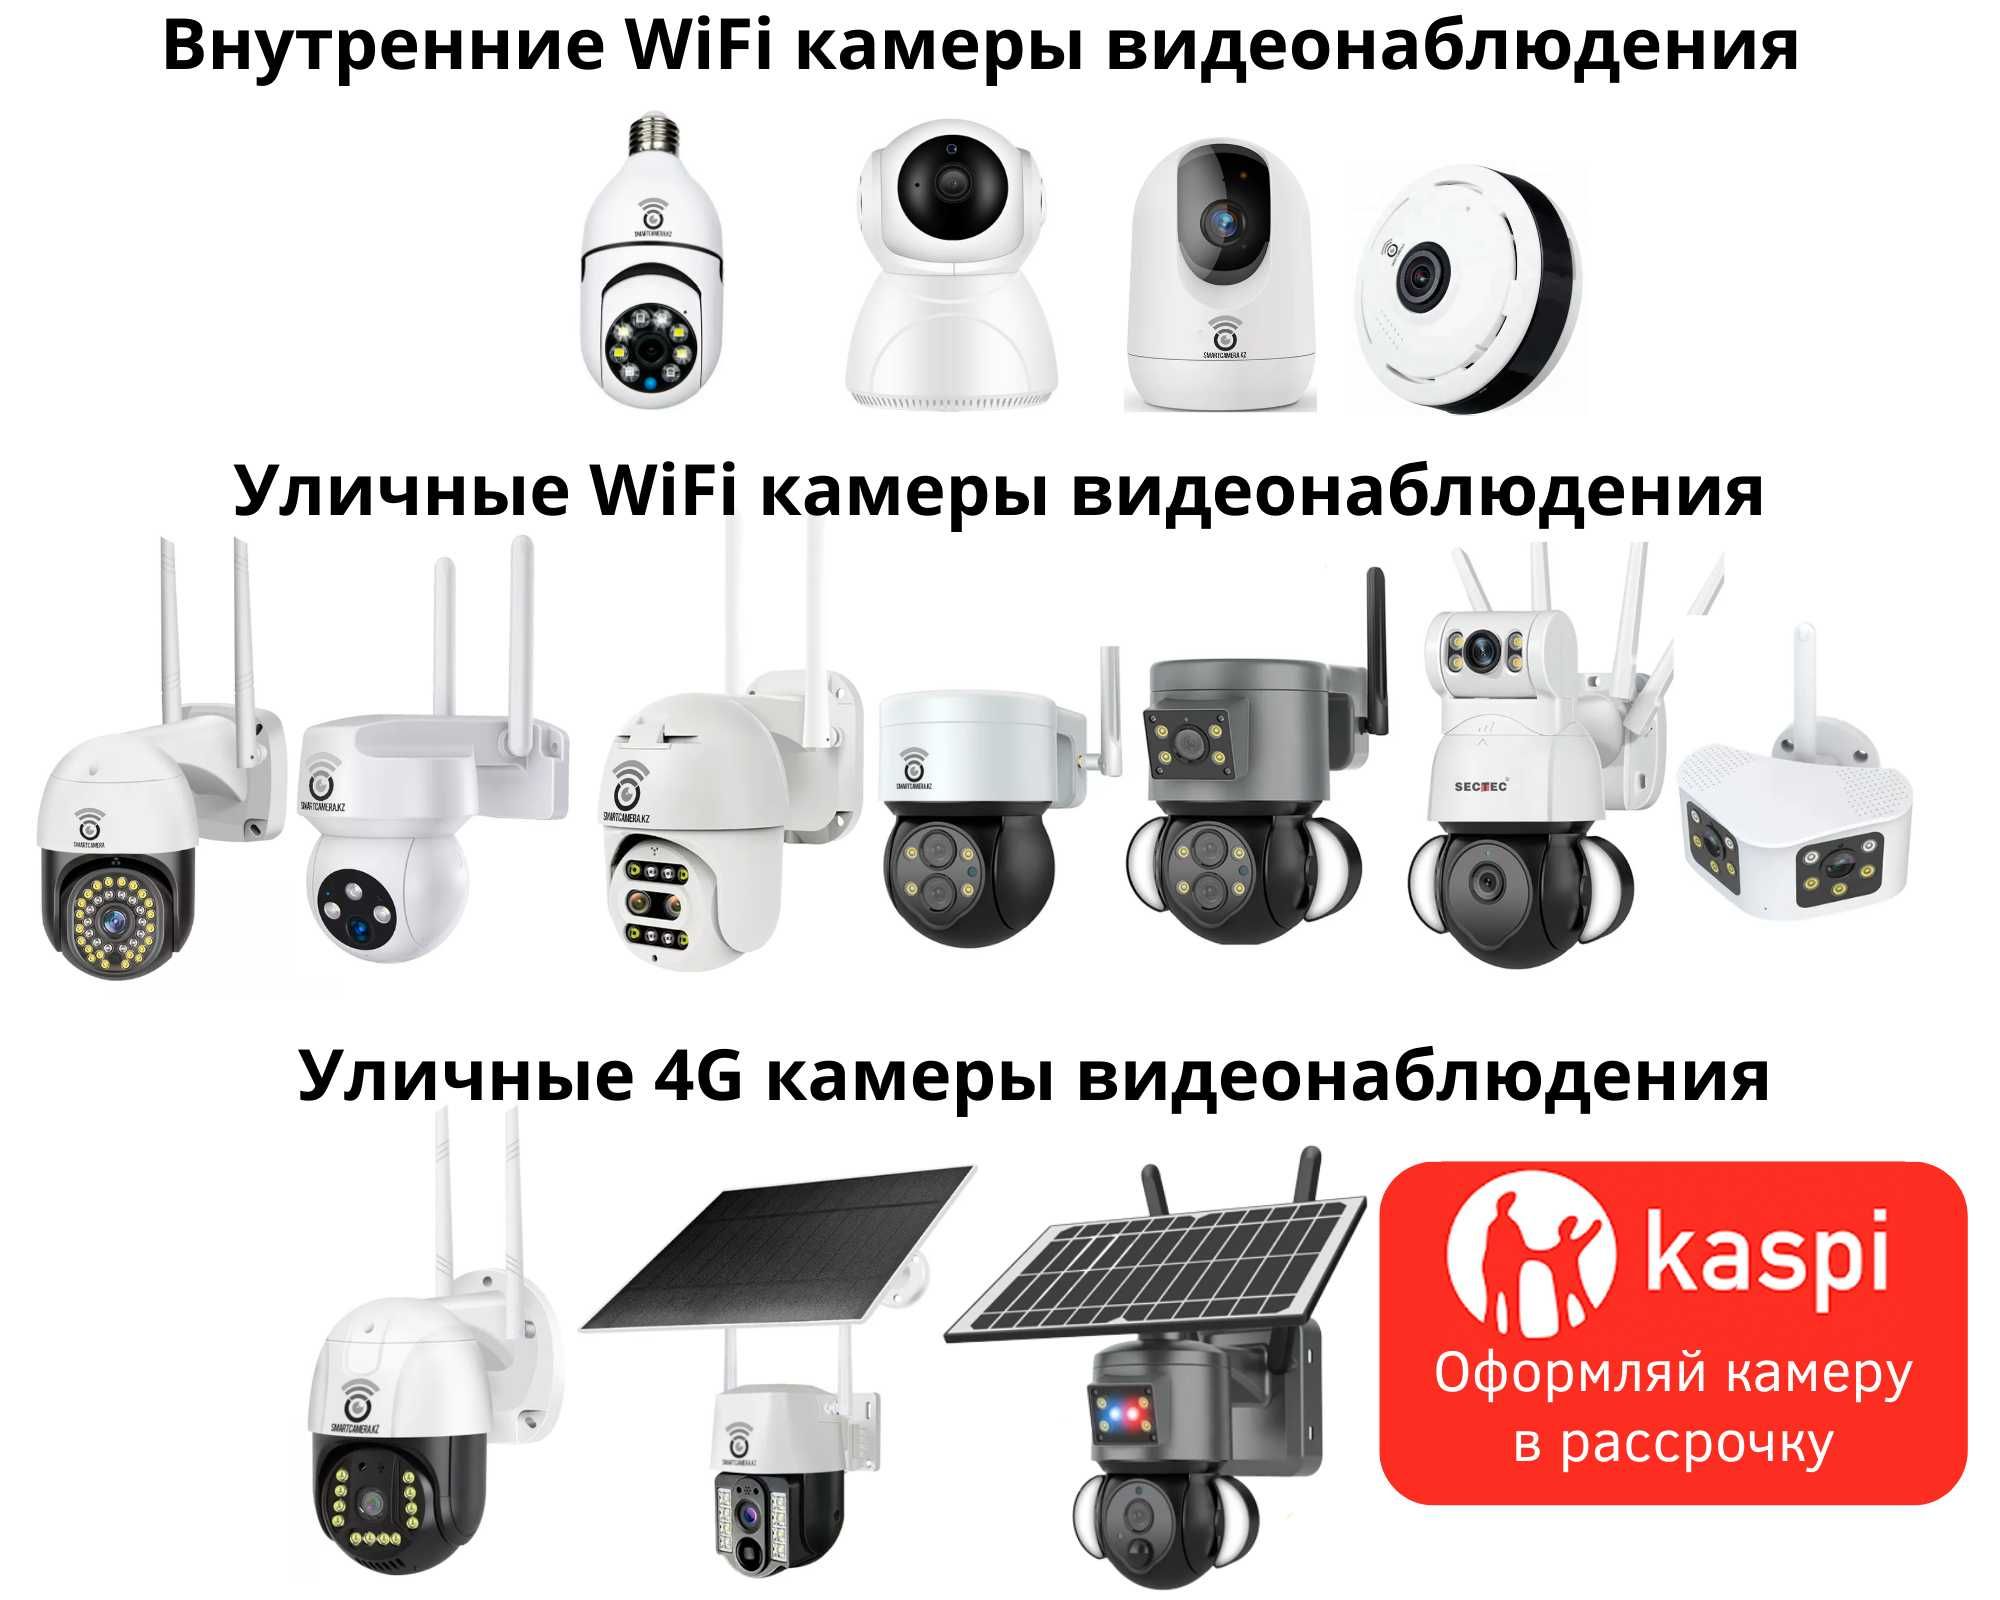 Беспроводные камеры видеонаблюдения для дома и бизнеса